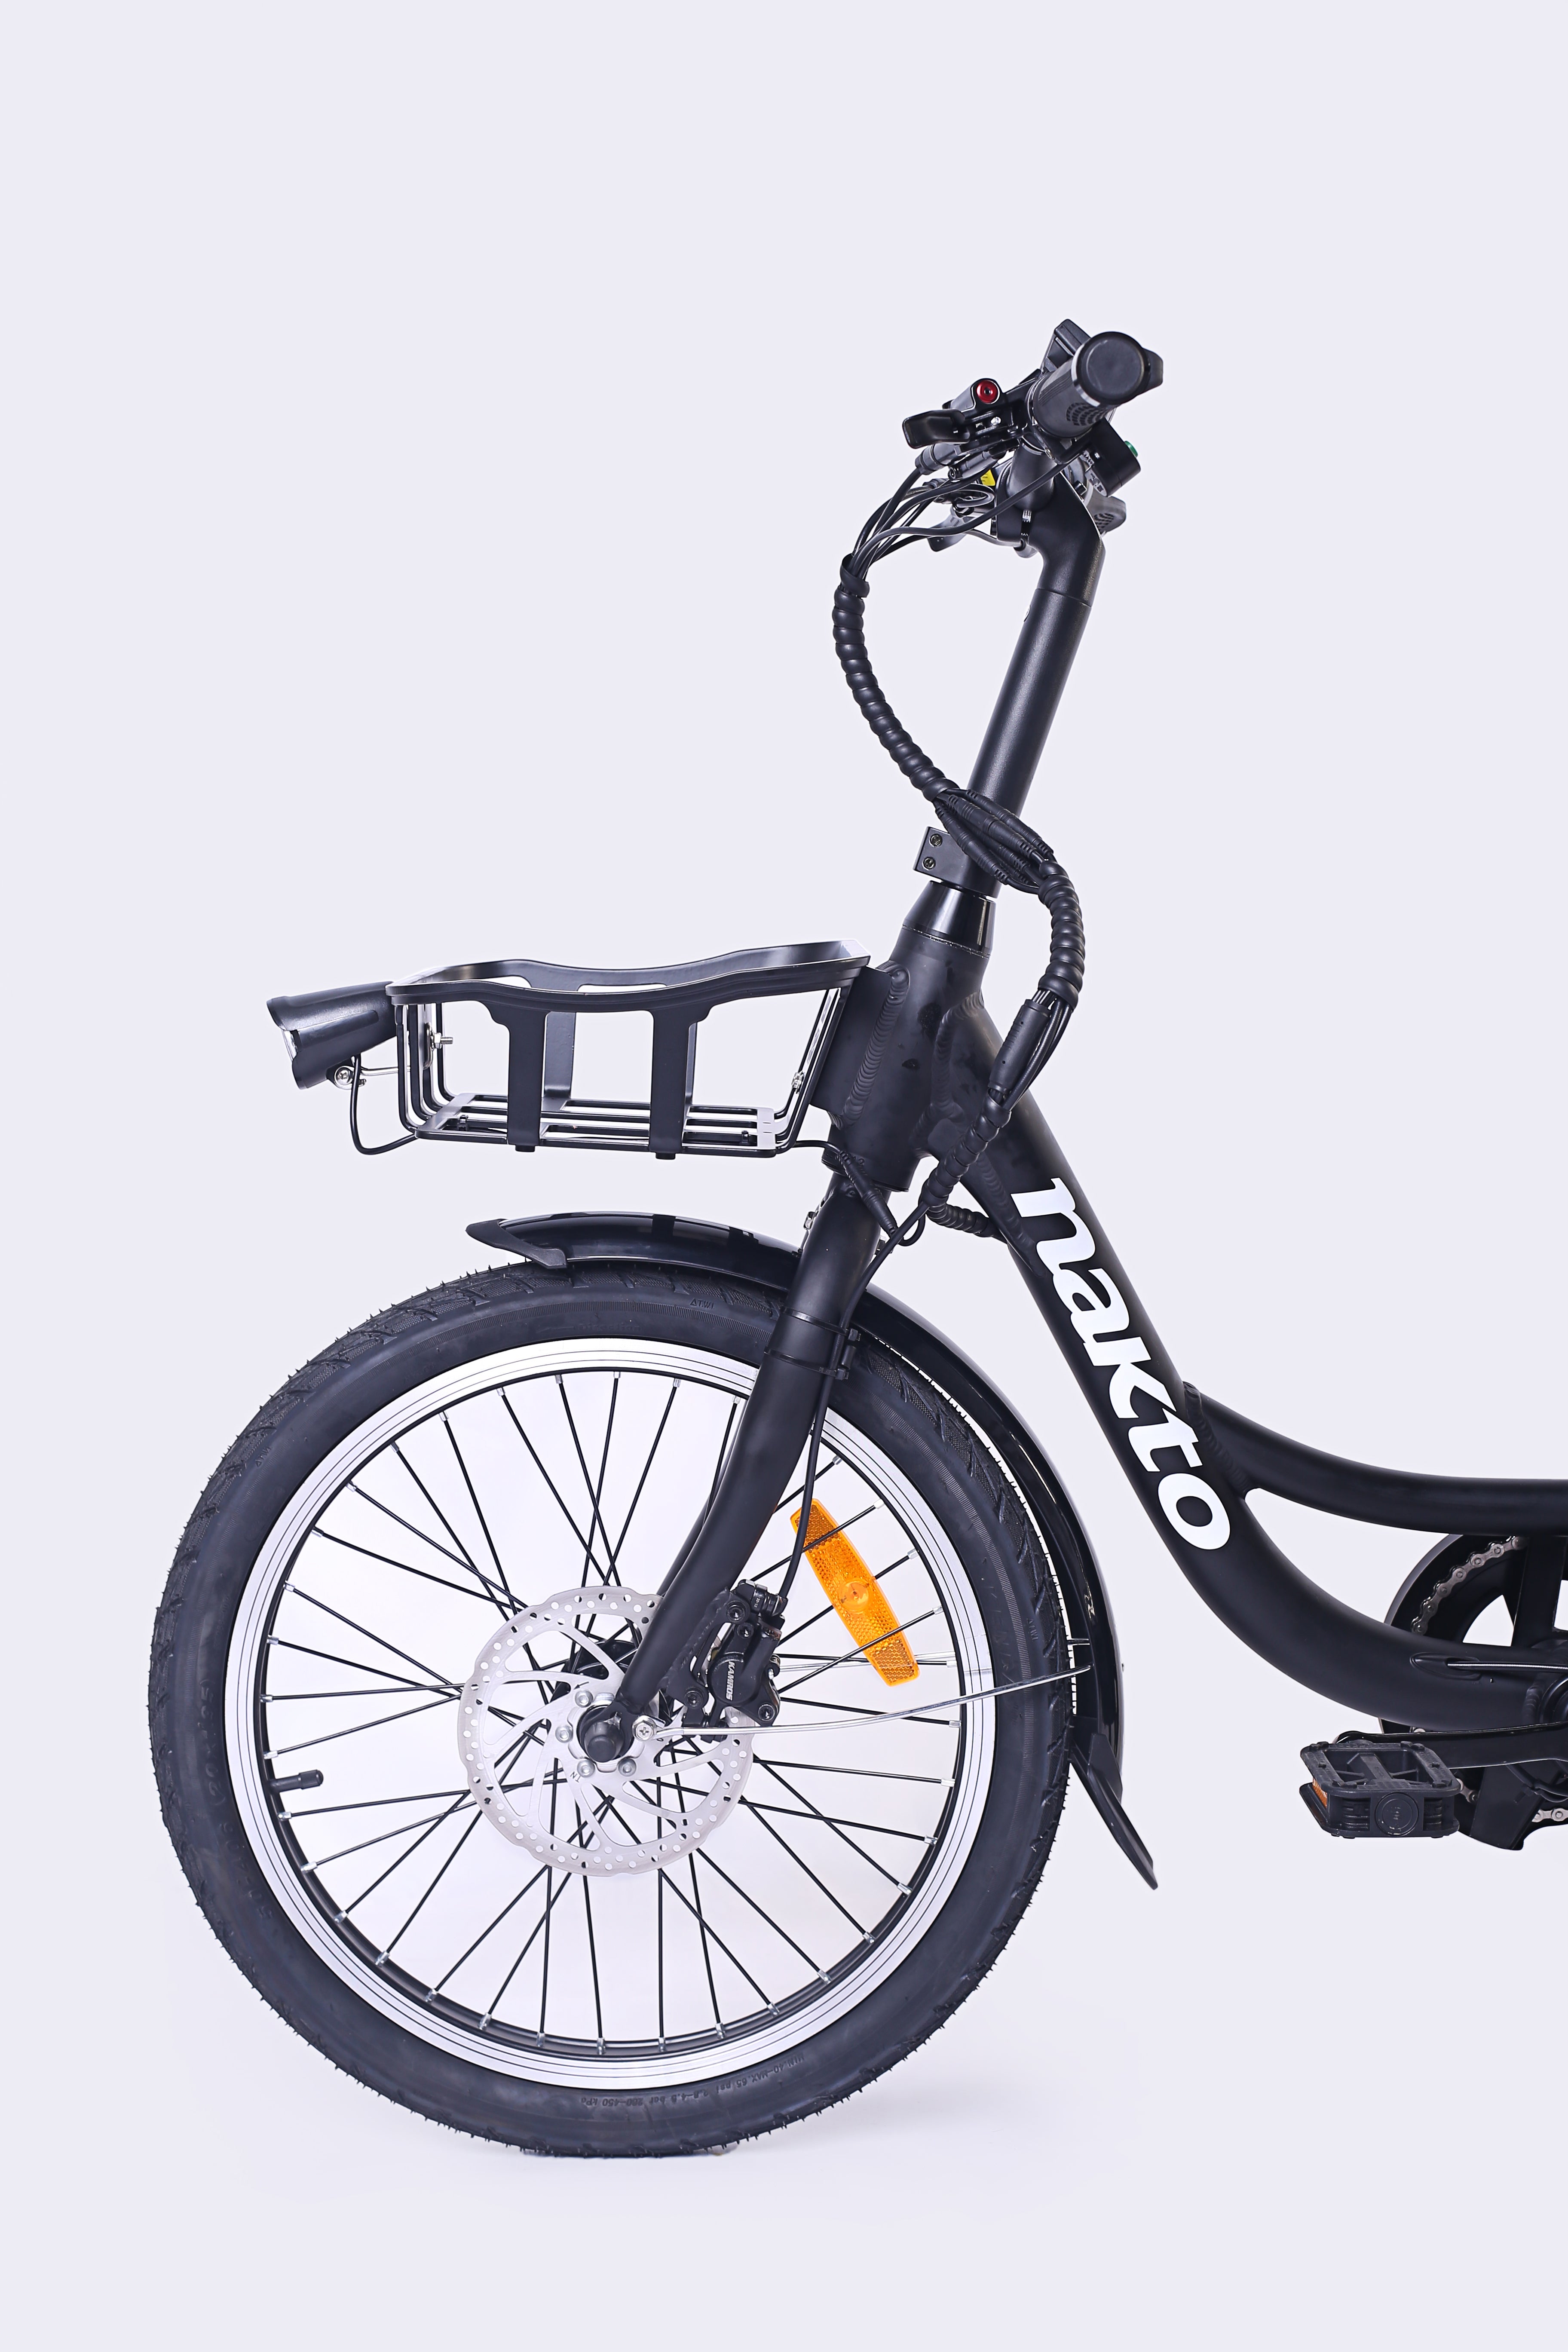 Carry Compact Utility E-bike